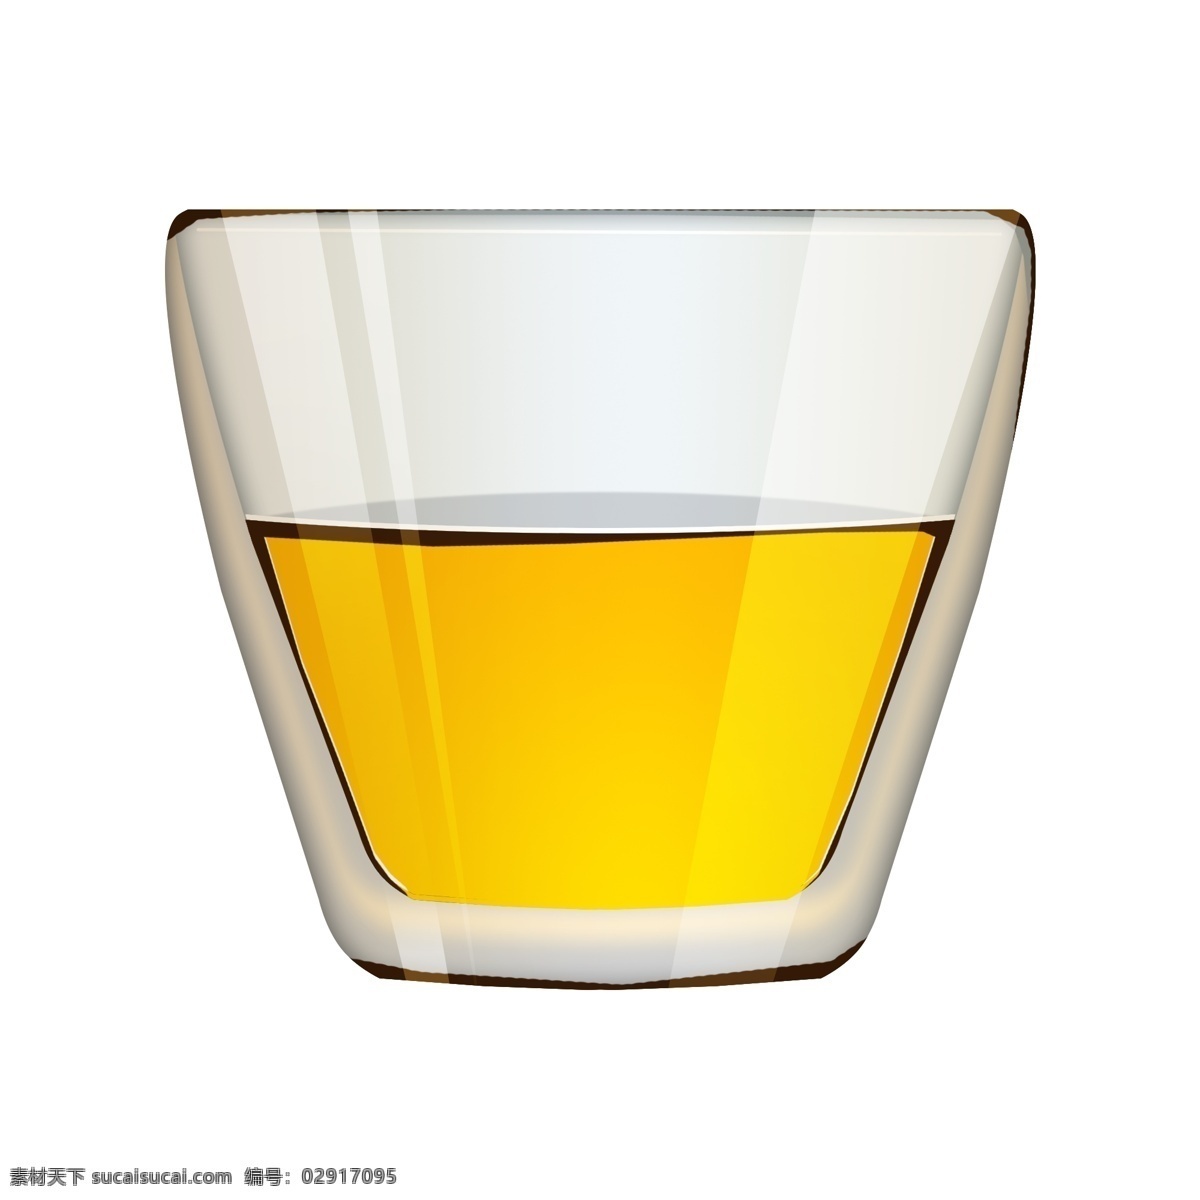 黄色 液体 玻璃 器 插图 装酒的杯子 玻璃杯子 白色杯子 创意图形 好看的杯子 日常用品 精美的杯子 卡通杯子